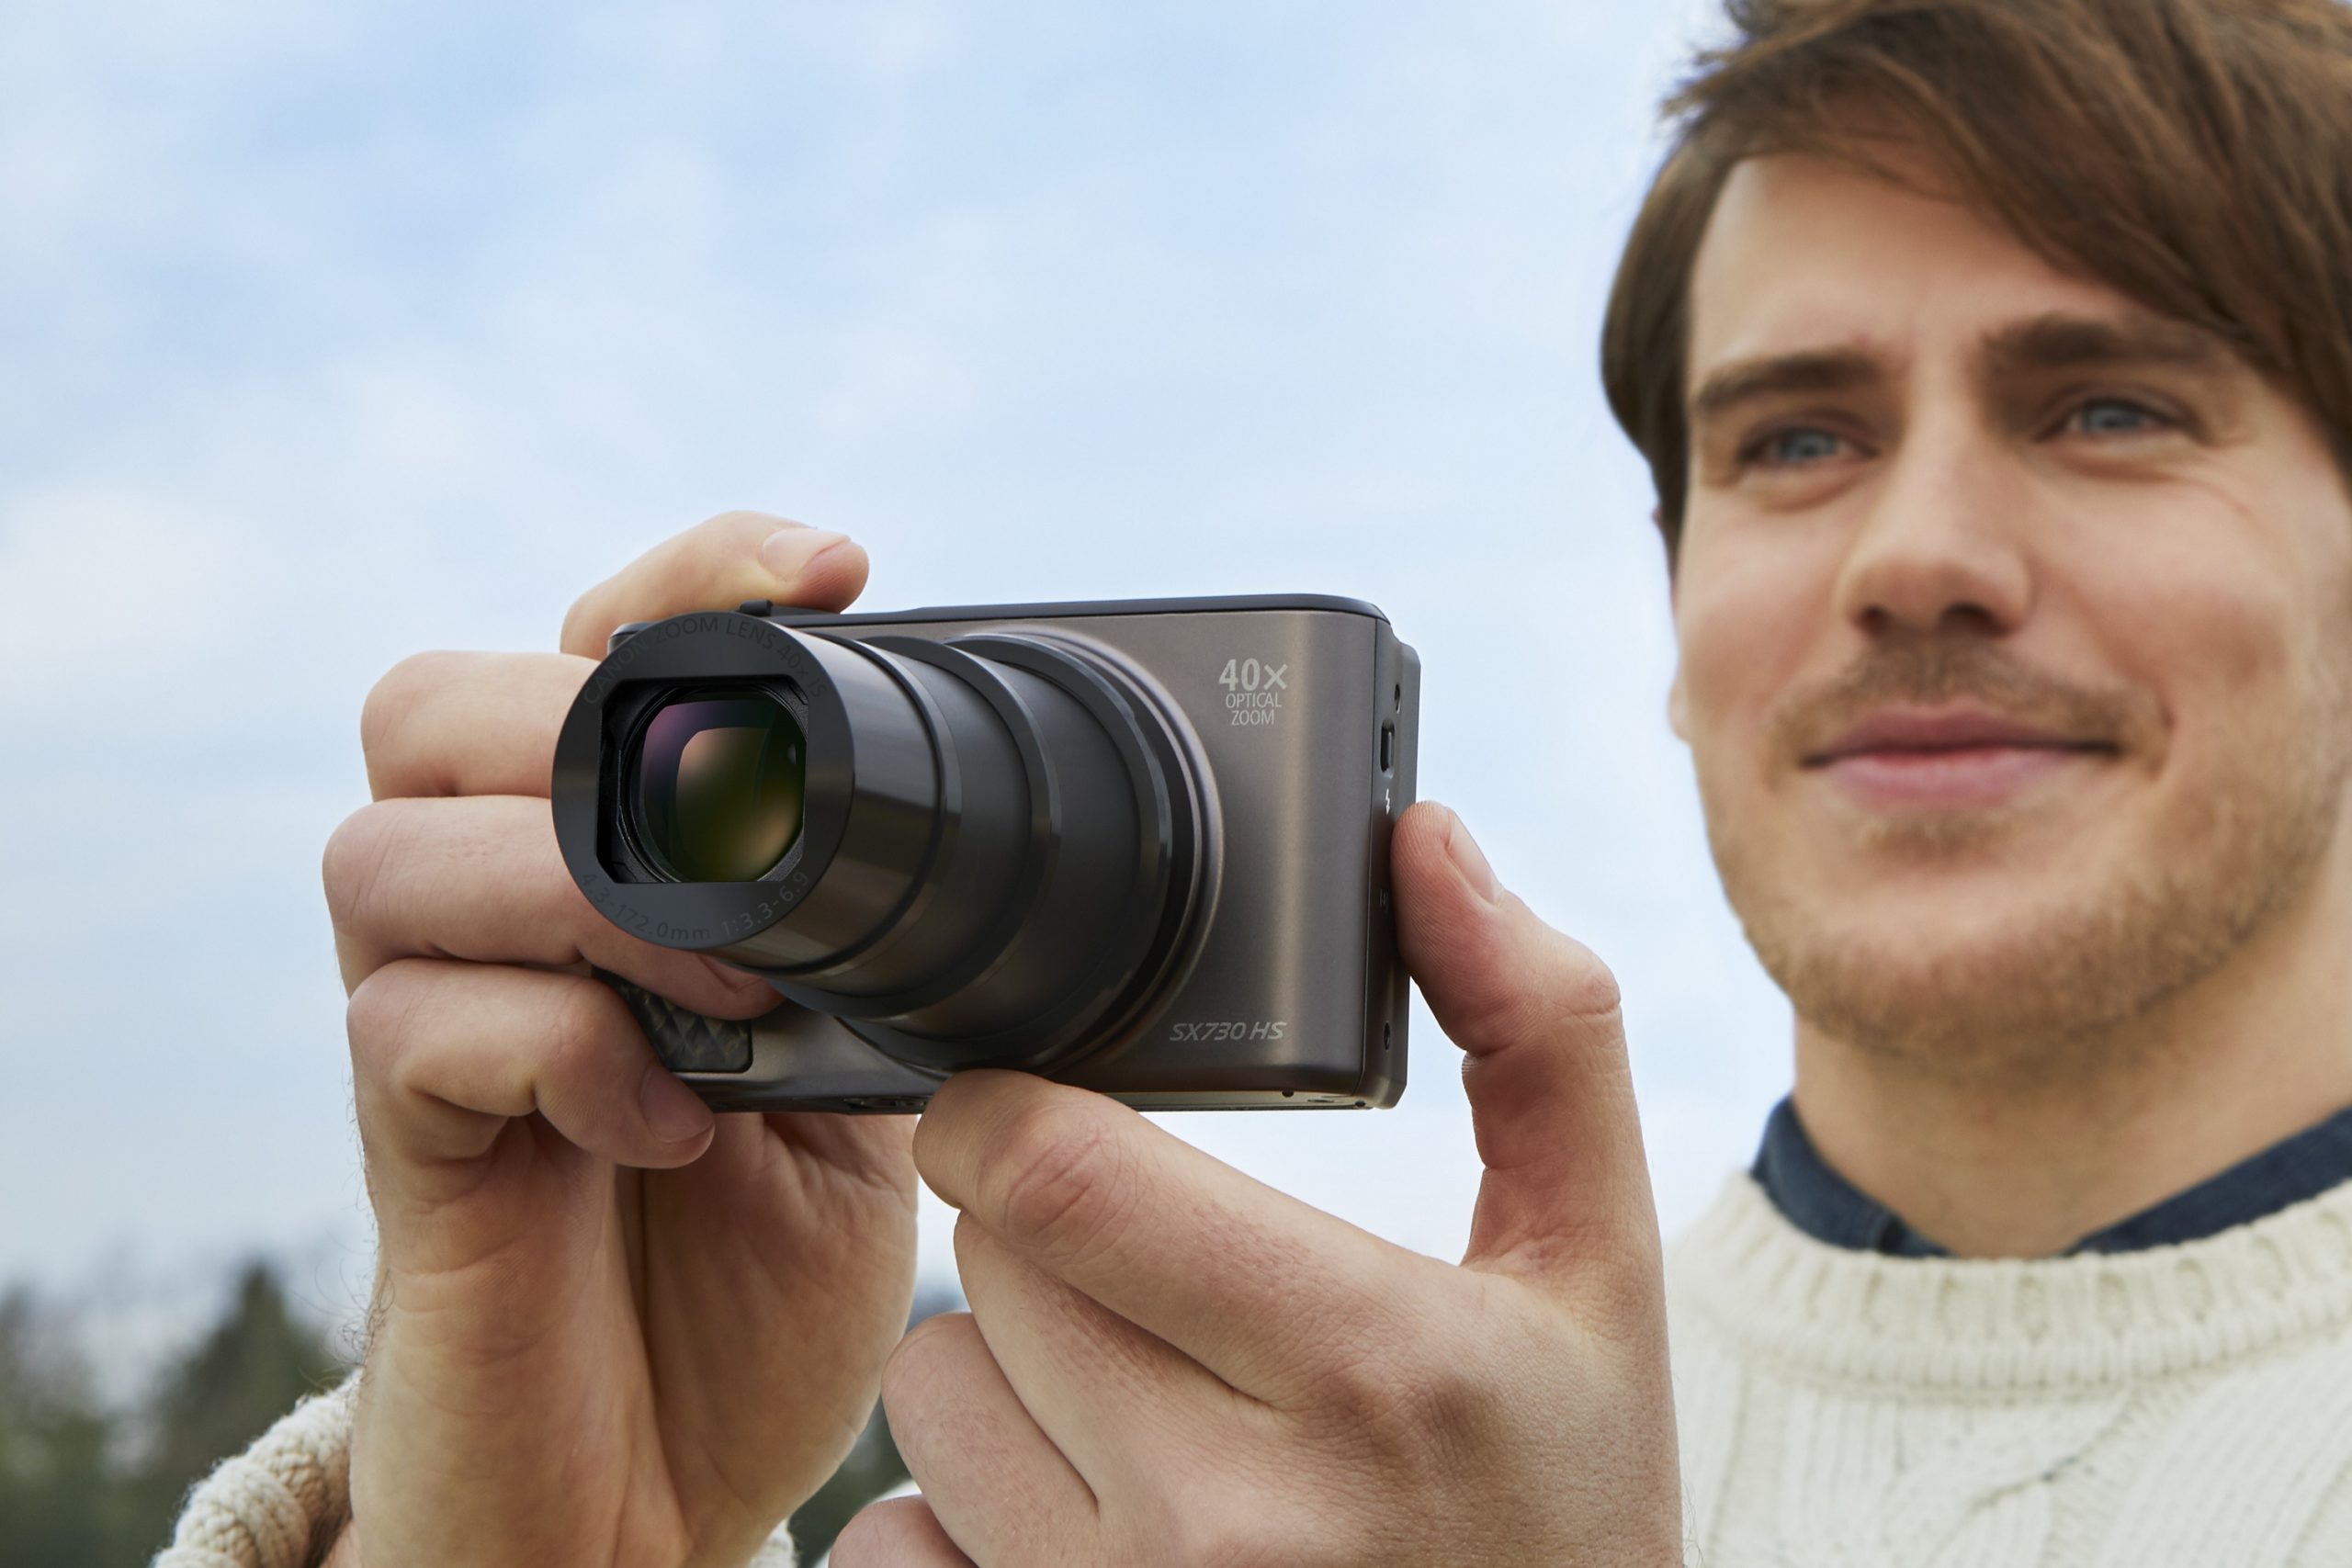  Noua compactă cu super zoom – Canon PowerShot SX730 HS